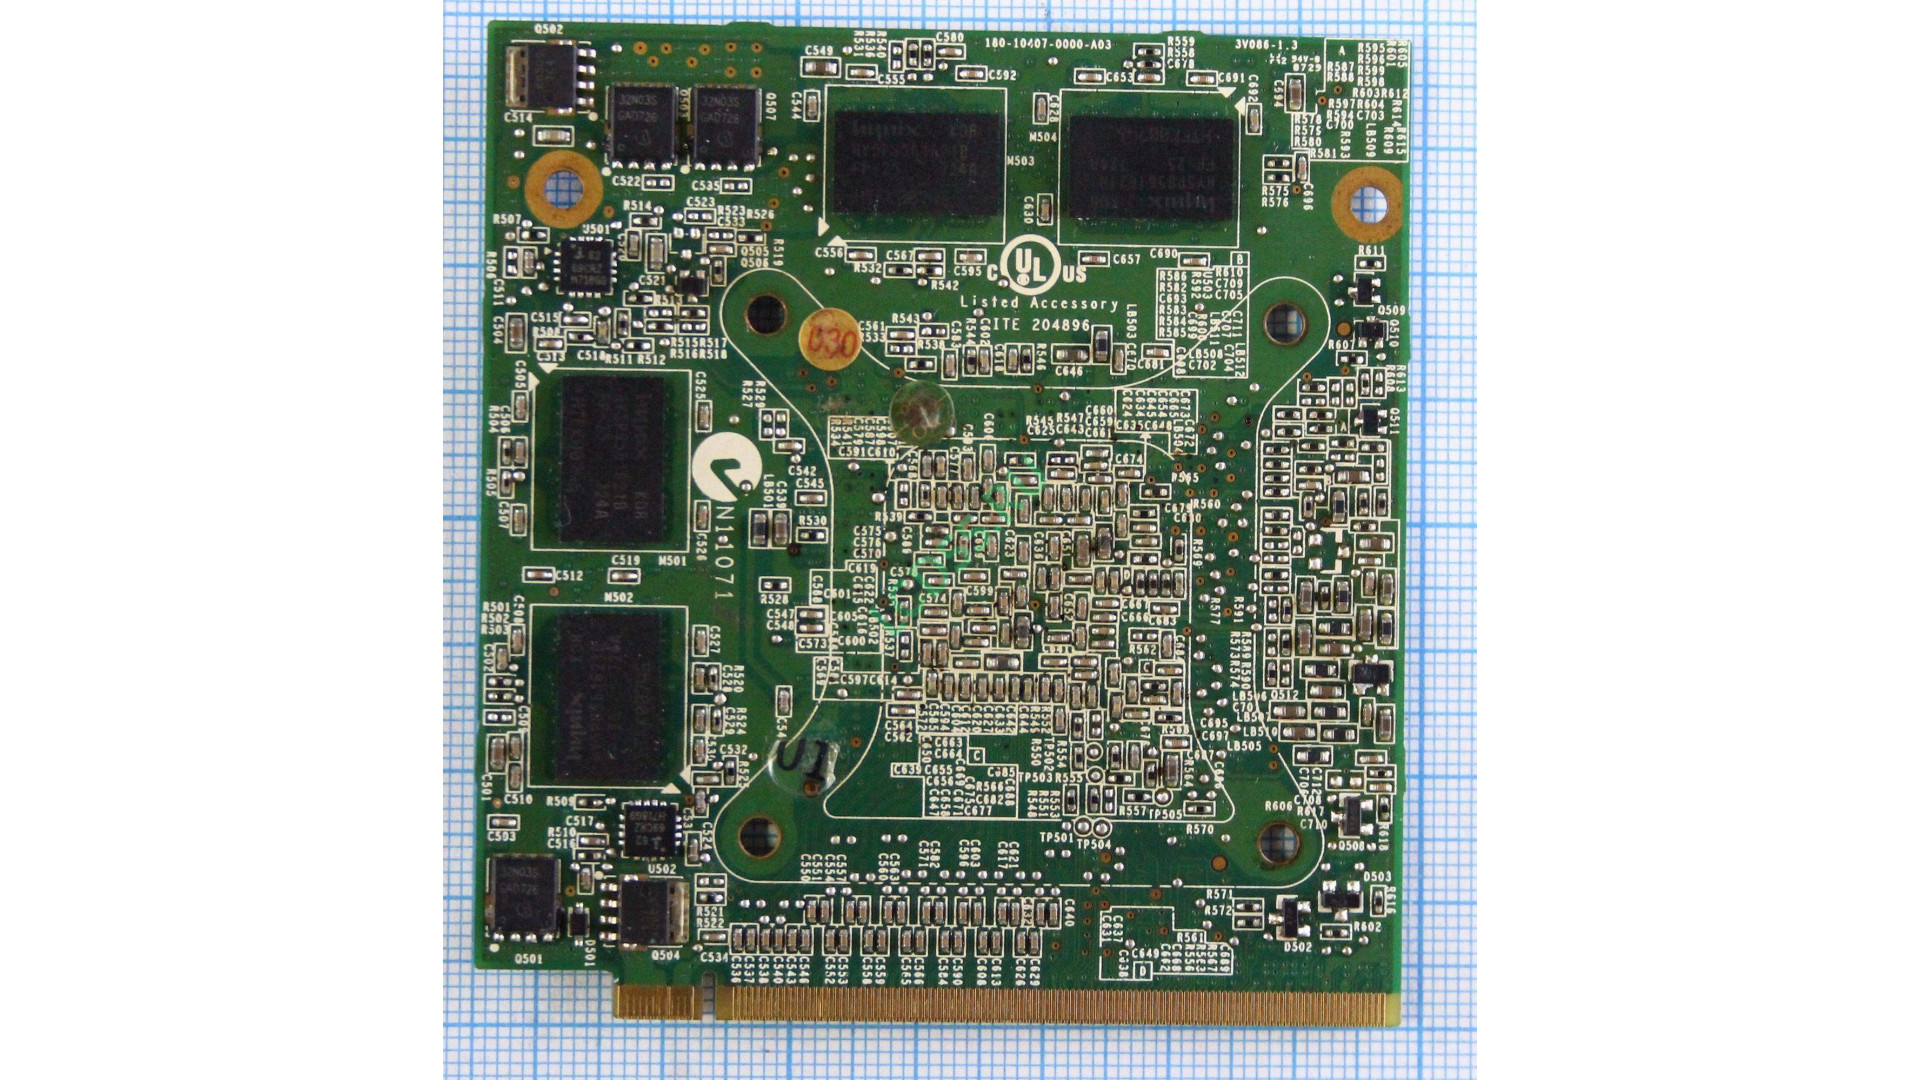 Видеокарта для ноутбука MXM II Geforce 8600M GT 512MB (V086 ver:1.3)